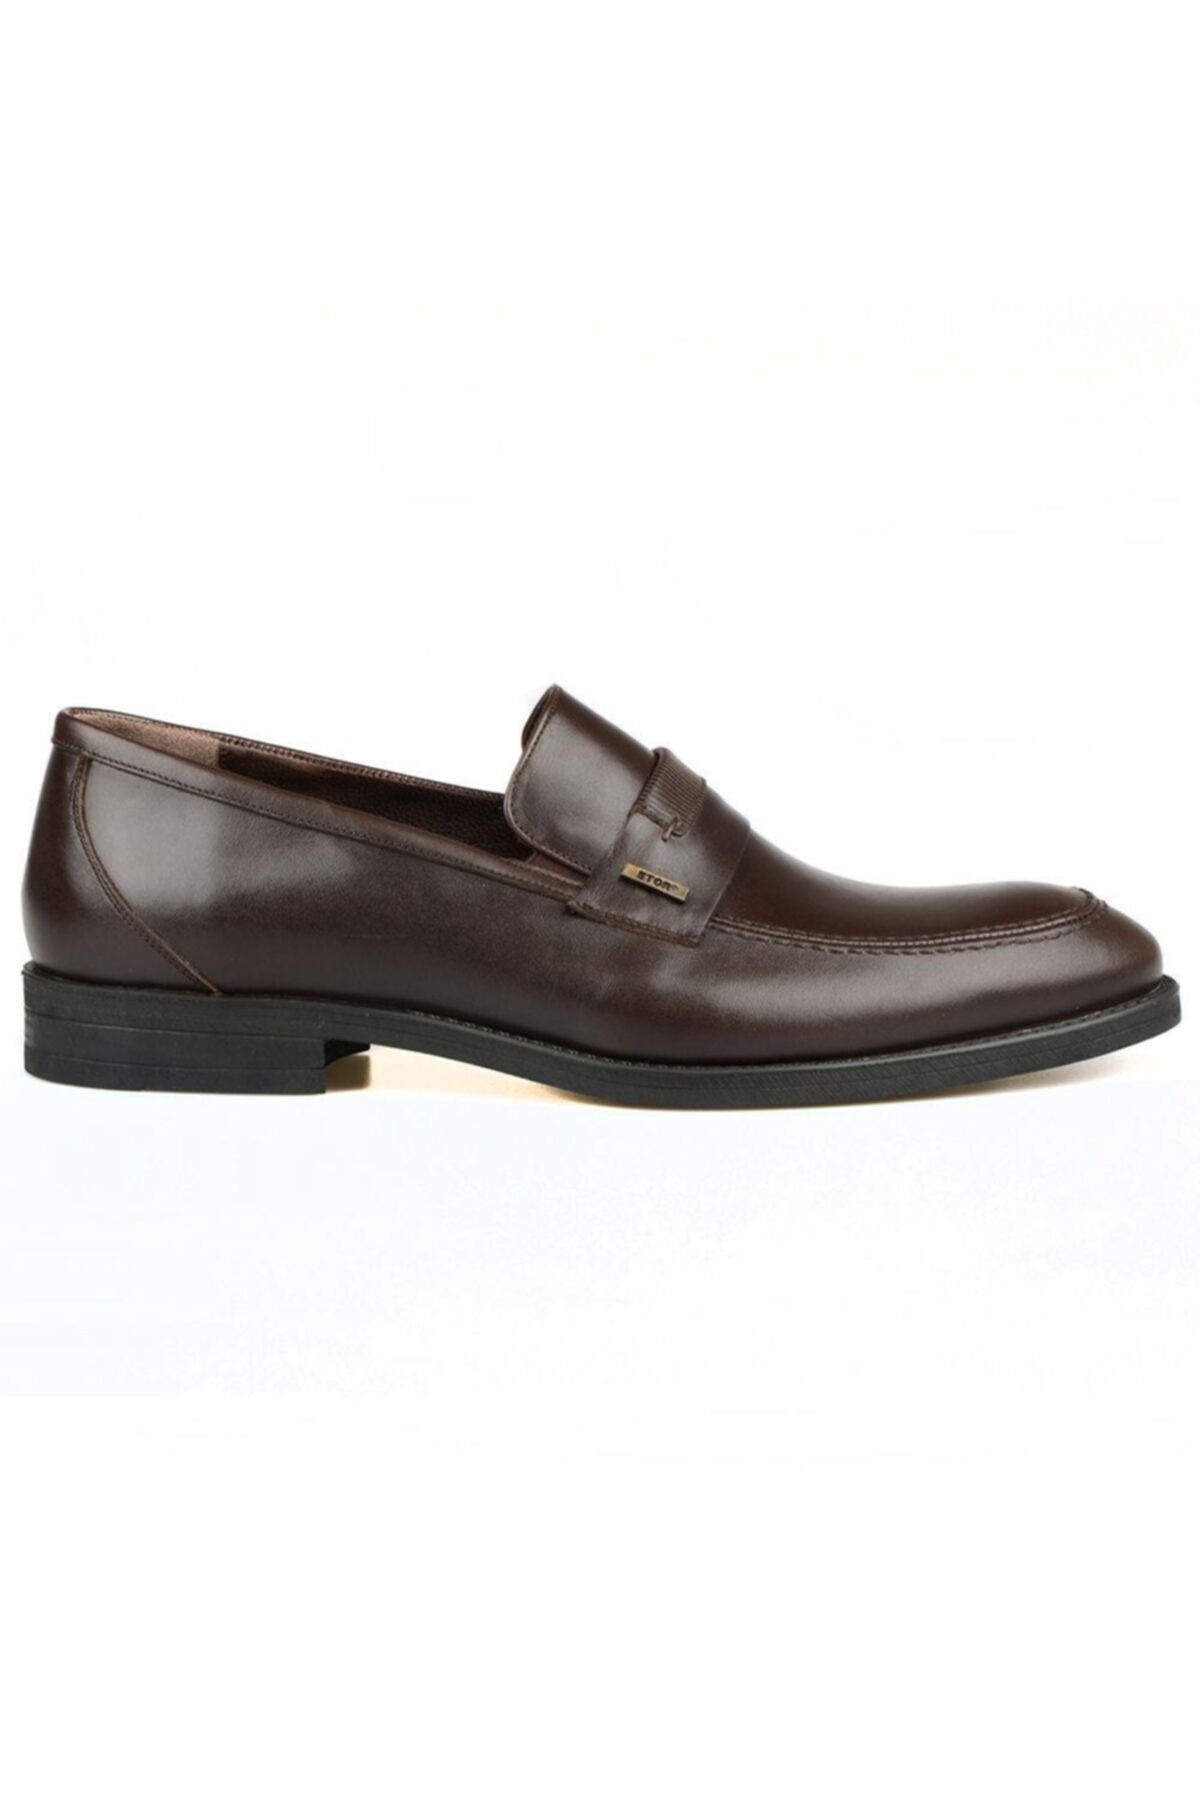 FootCourt Erkek Kahverengi Deri Klasik Büyük Numara Ayakkabı